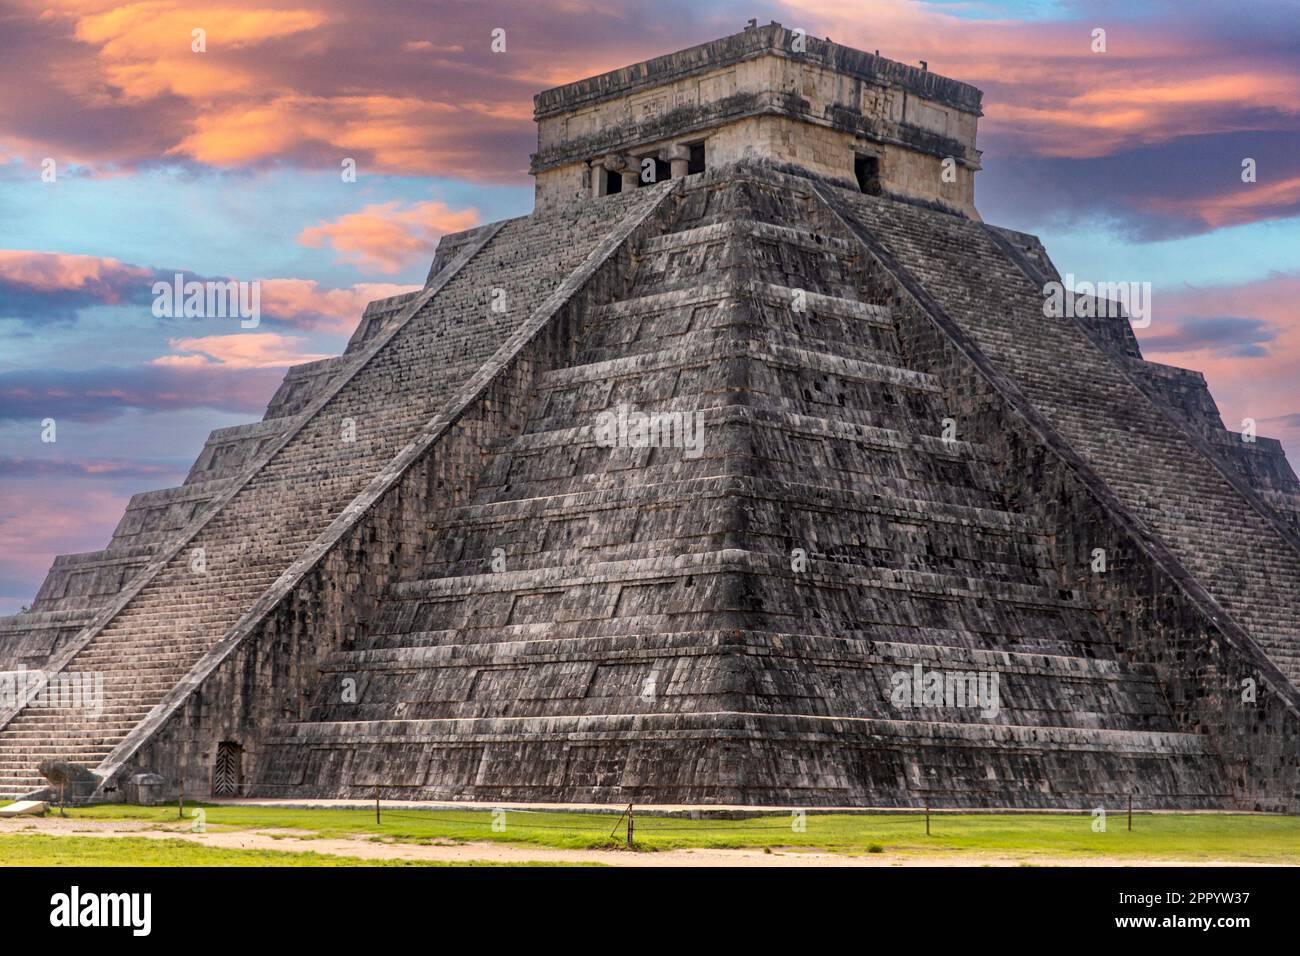 Das Schloss und der Tempel von Chichen Itza, bekannt als die berühmte Maya-Pyramide von Mexiko unter einem apokalyptischen orangefarbenen Himmel, gehört zur Maya-Kultur und Stockfoto